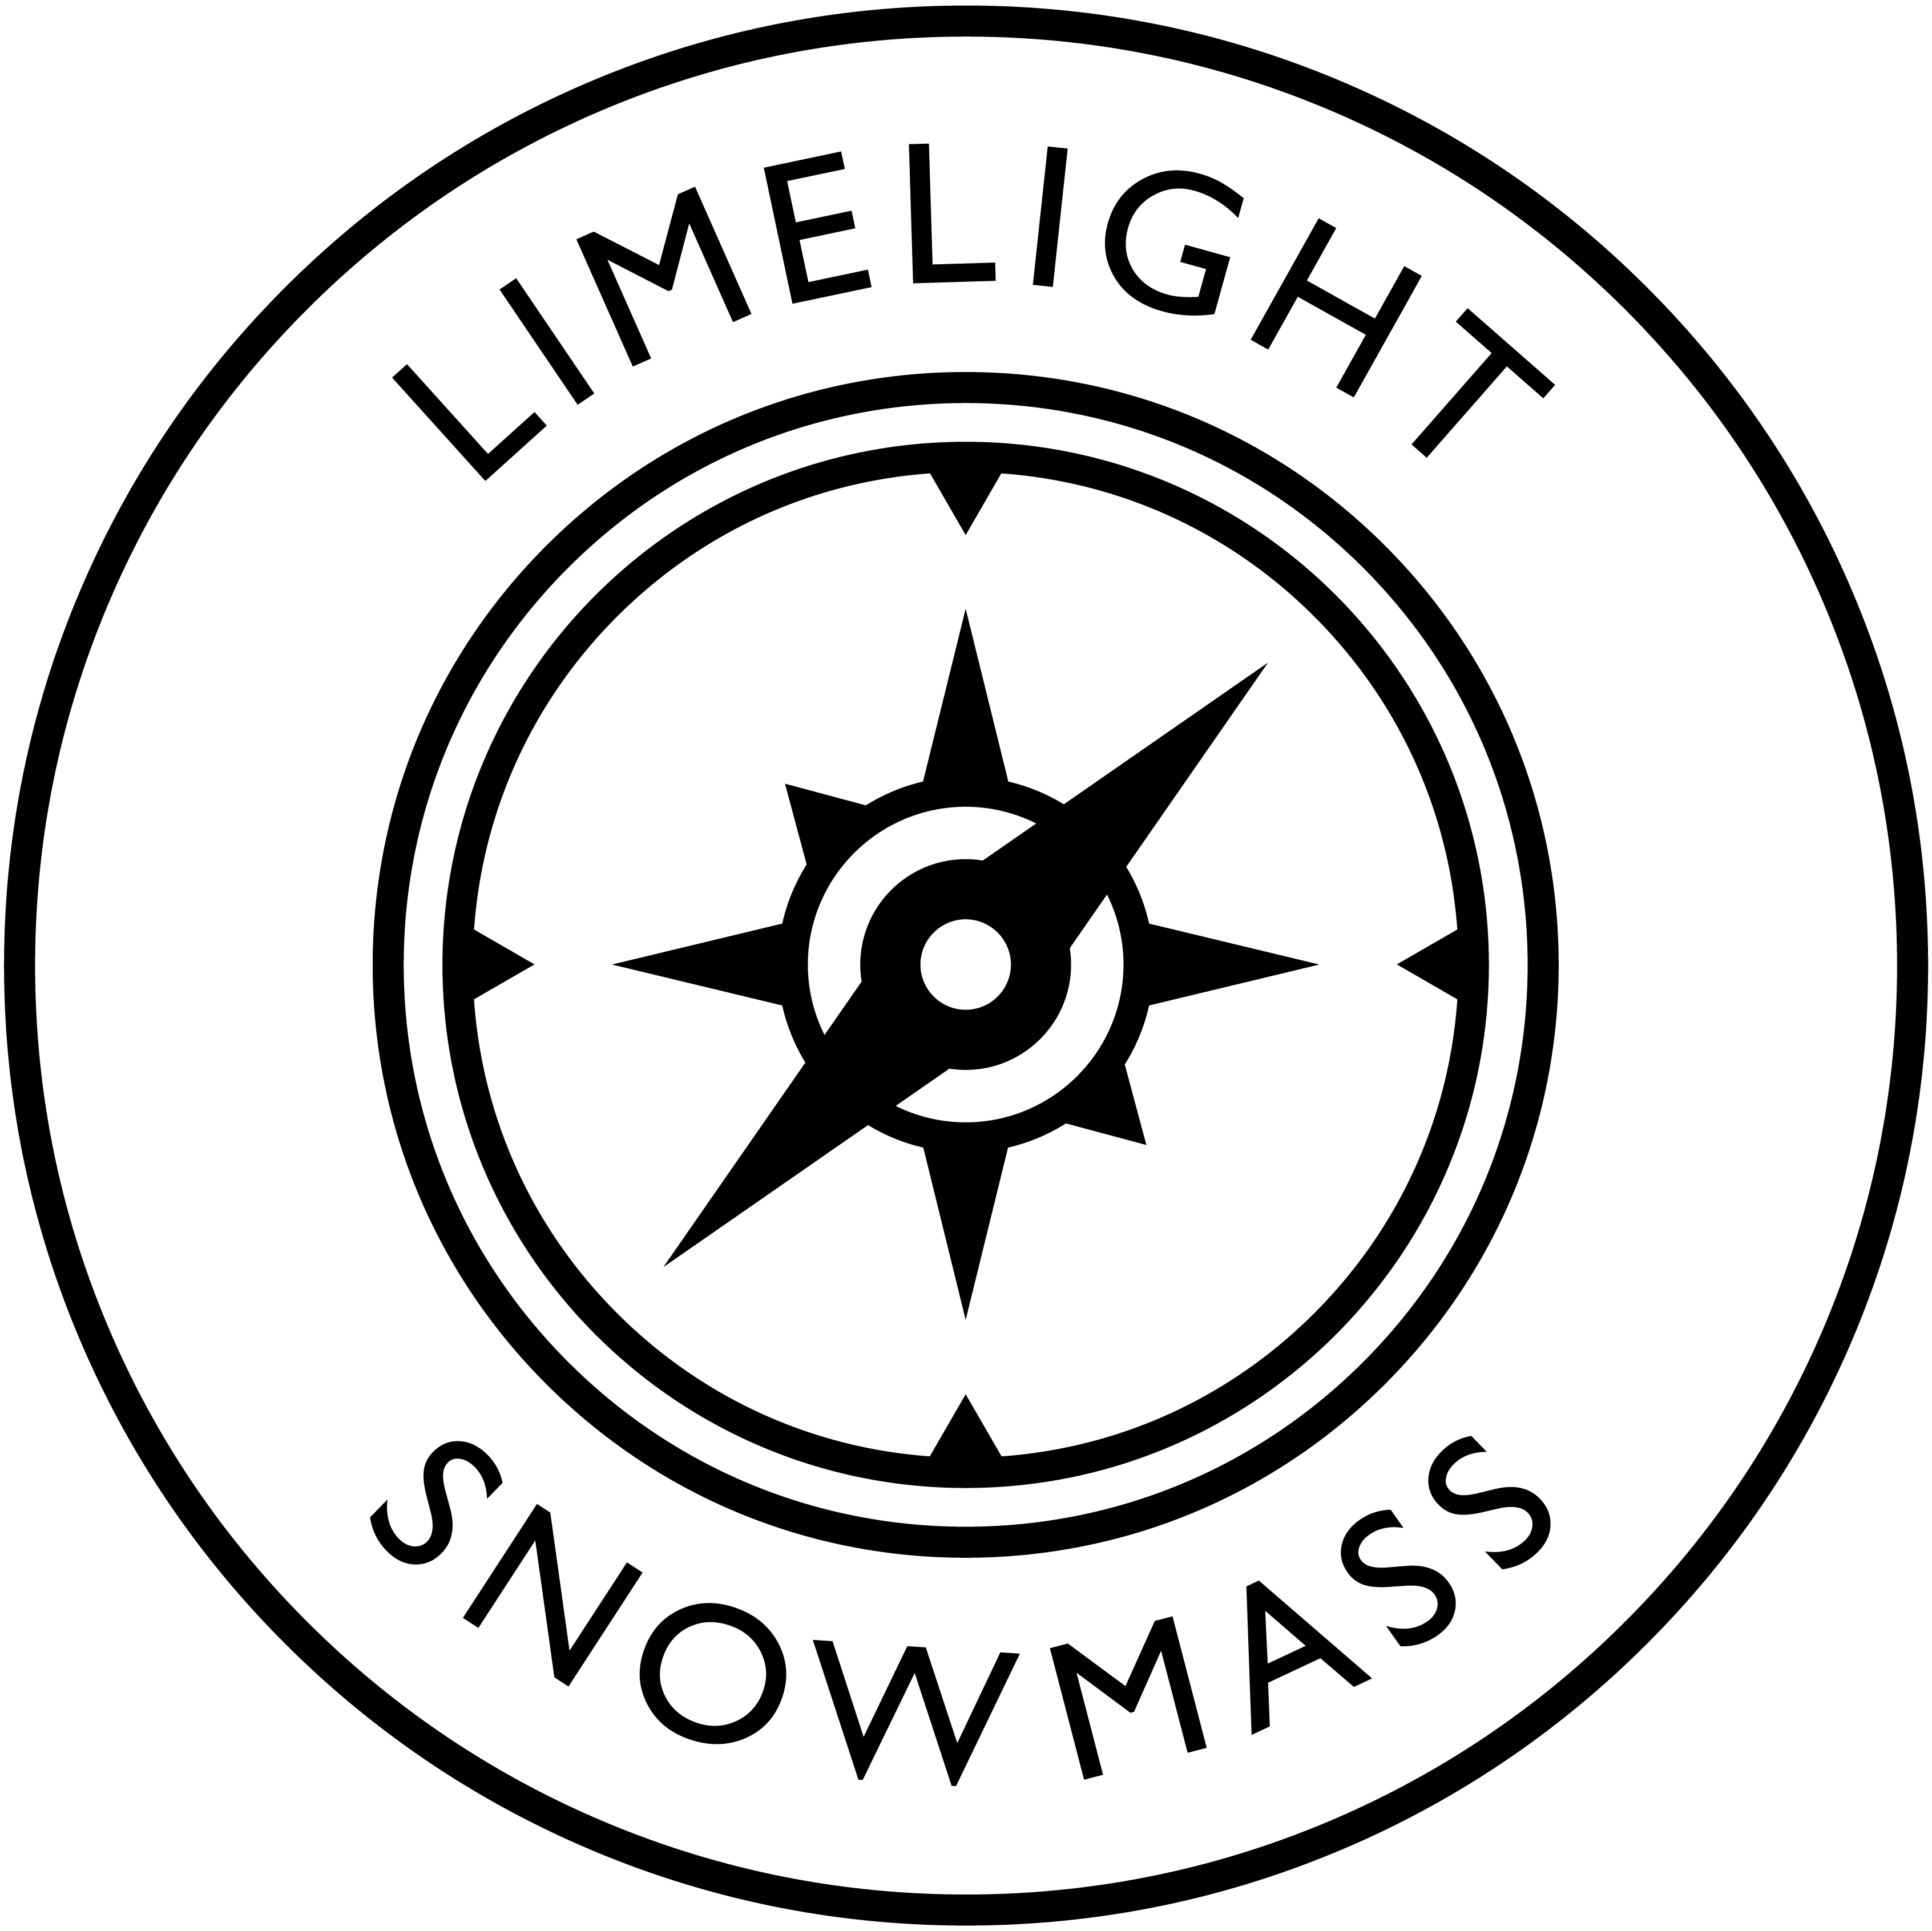 Limelight Snowmass Compass Logo